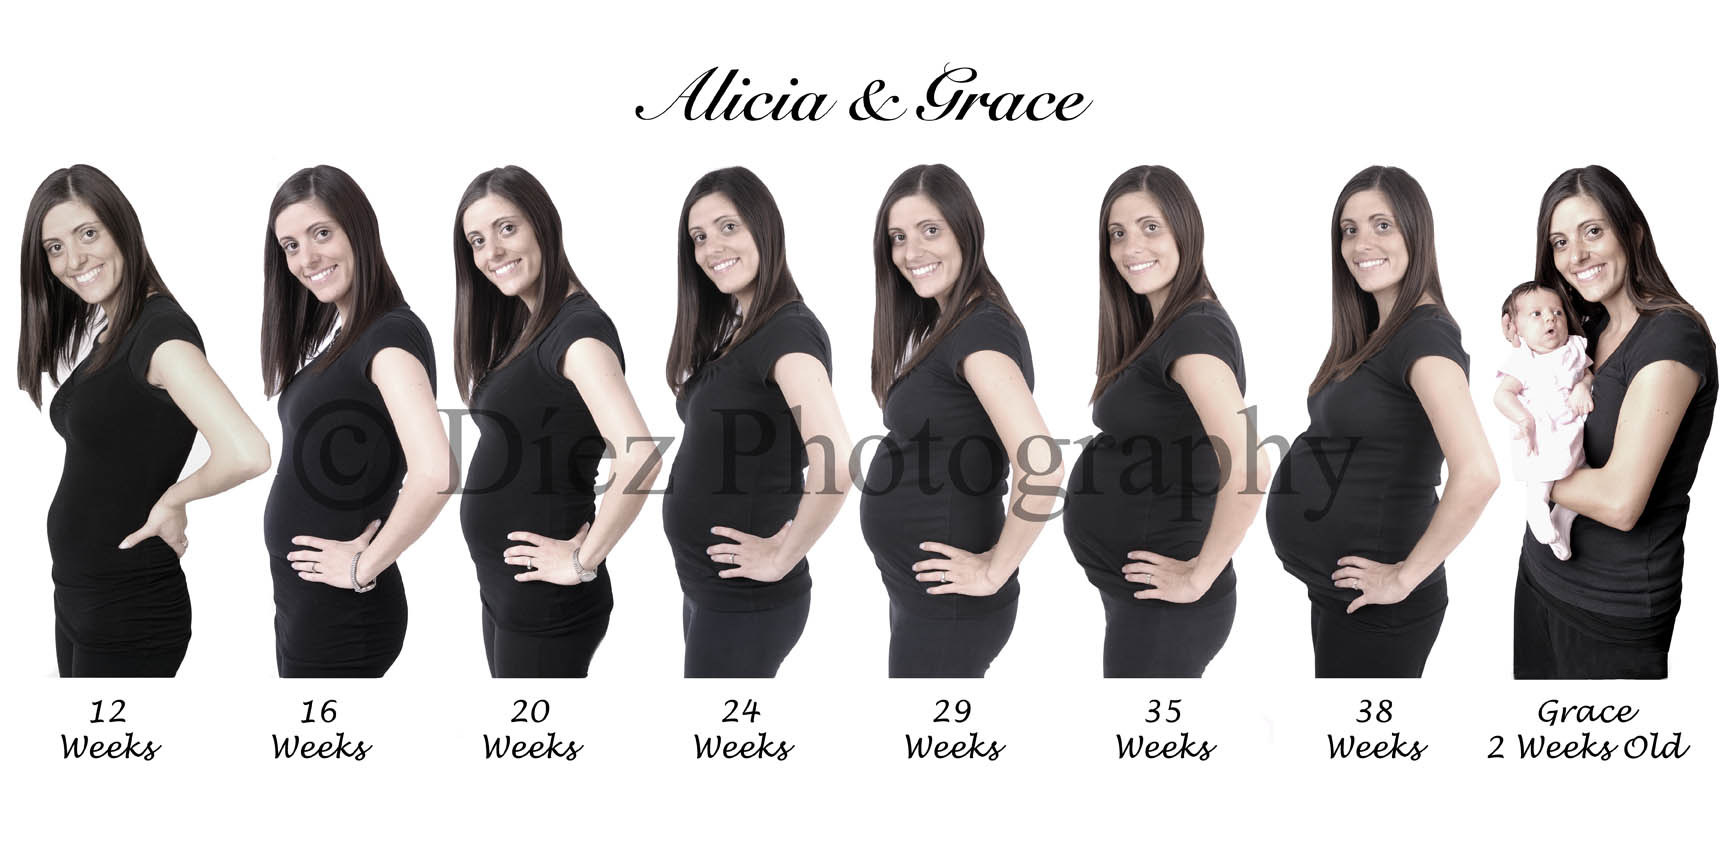 Pregnancy progression covered 2